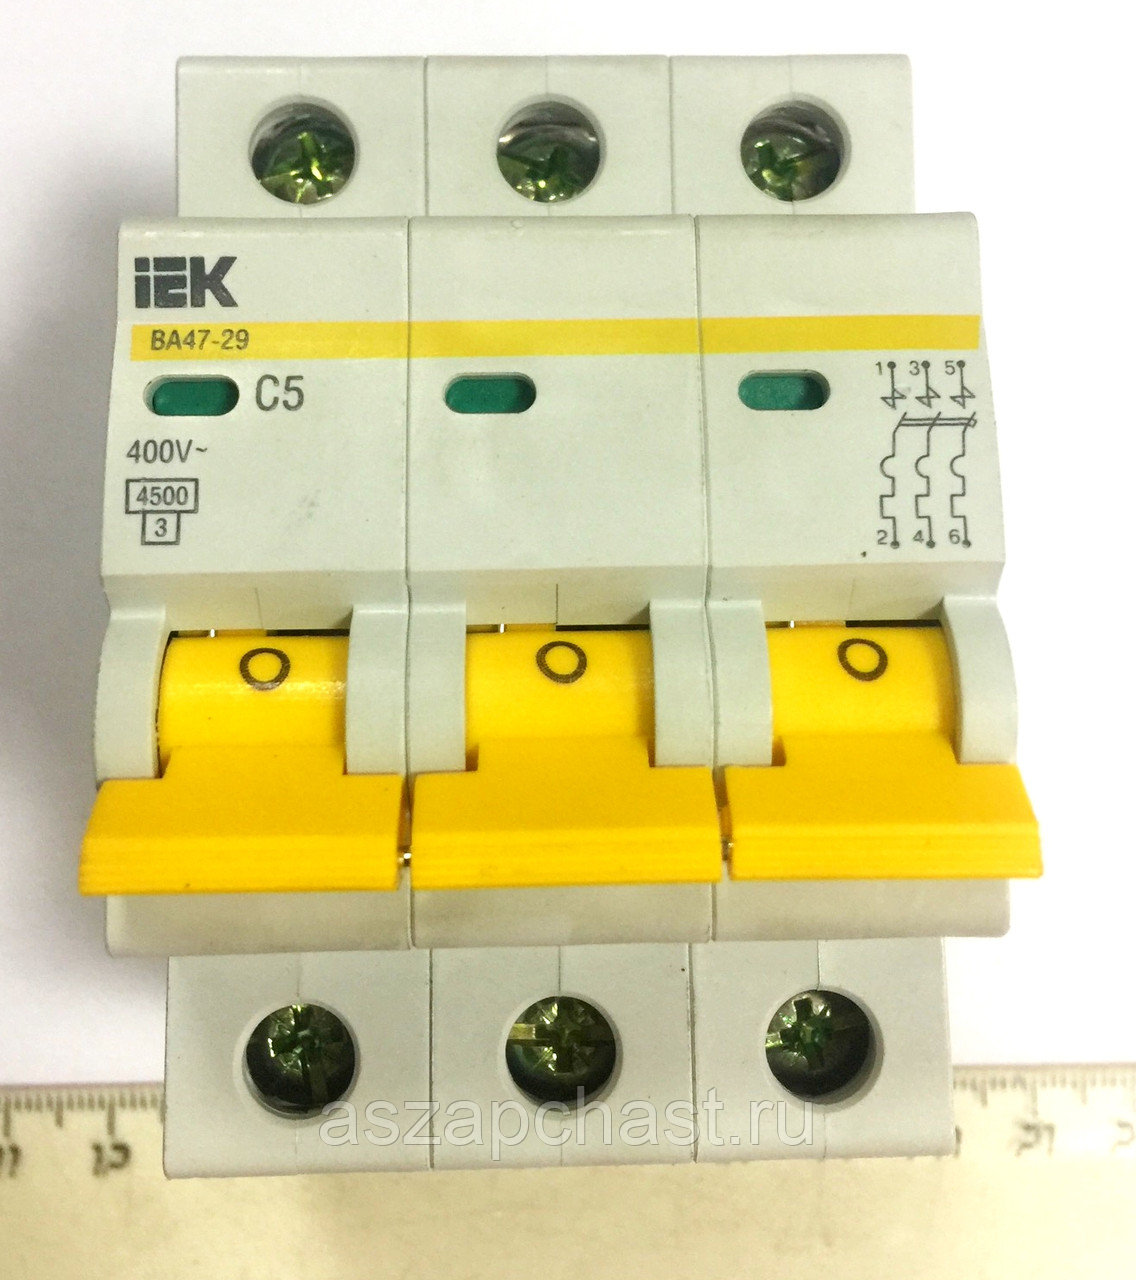 Автоматический выключатель иэк 3р. Автоматический выключатель IEK ва47-29 3p. Выключатель автоматический ва47-29 3р. Выключатель автоматический ва47-29 3р 16а IEK Атрион. Выключатель IEK ва47-29 3р 50а b.